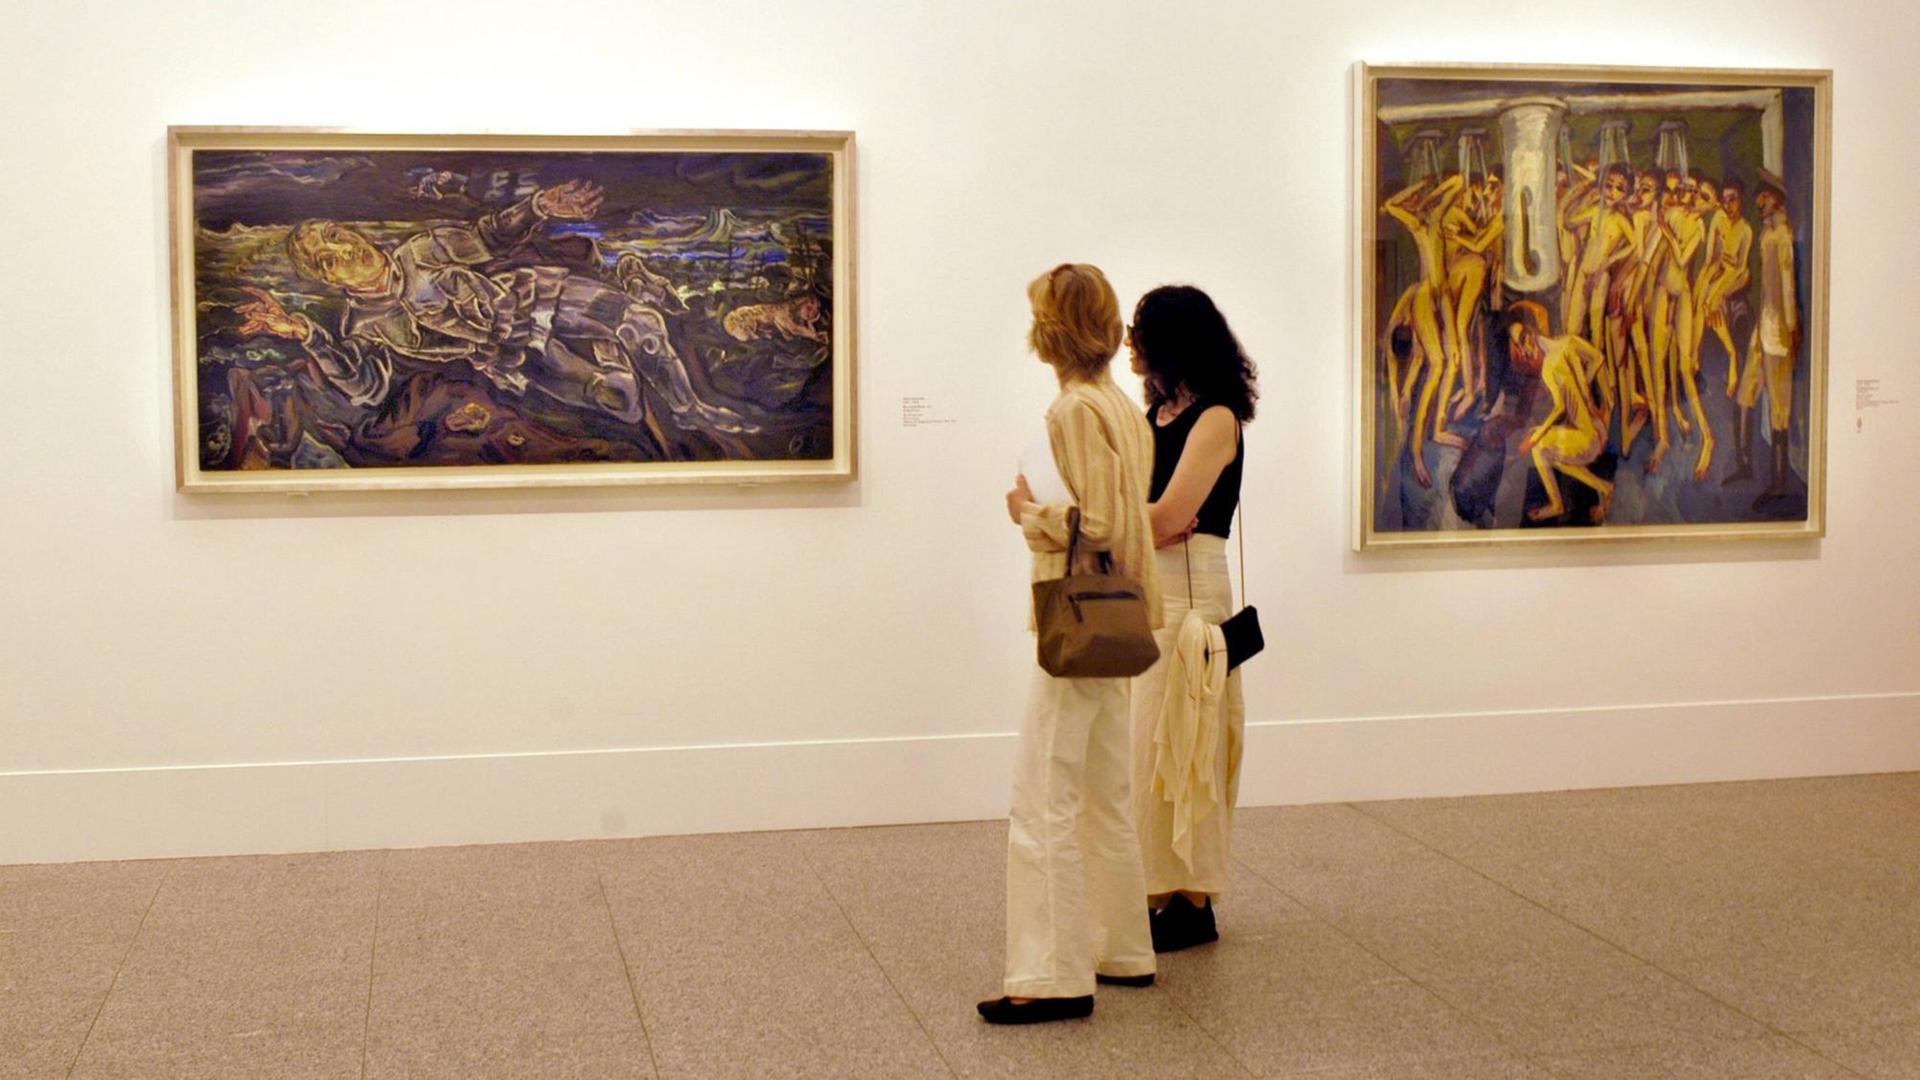 Besucherinnen der Ausstellung "The Guggenheim Collection" in Bonn vor dem Gemälde "Der irrende Ritter" von Oskar Kokoschka. Rechts das Gemälde "Das Soldatenbad" von Ernst Ludwig Kirchner, 2006